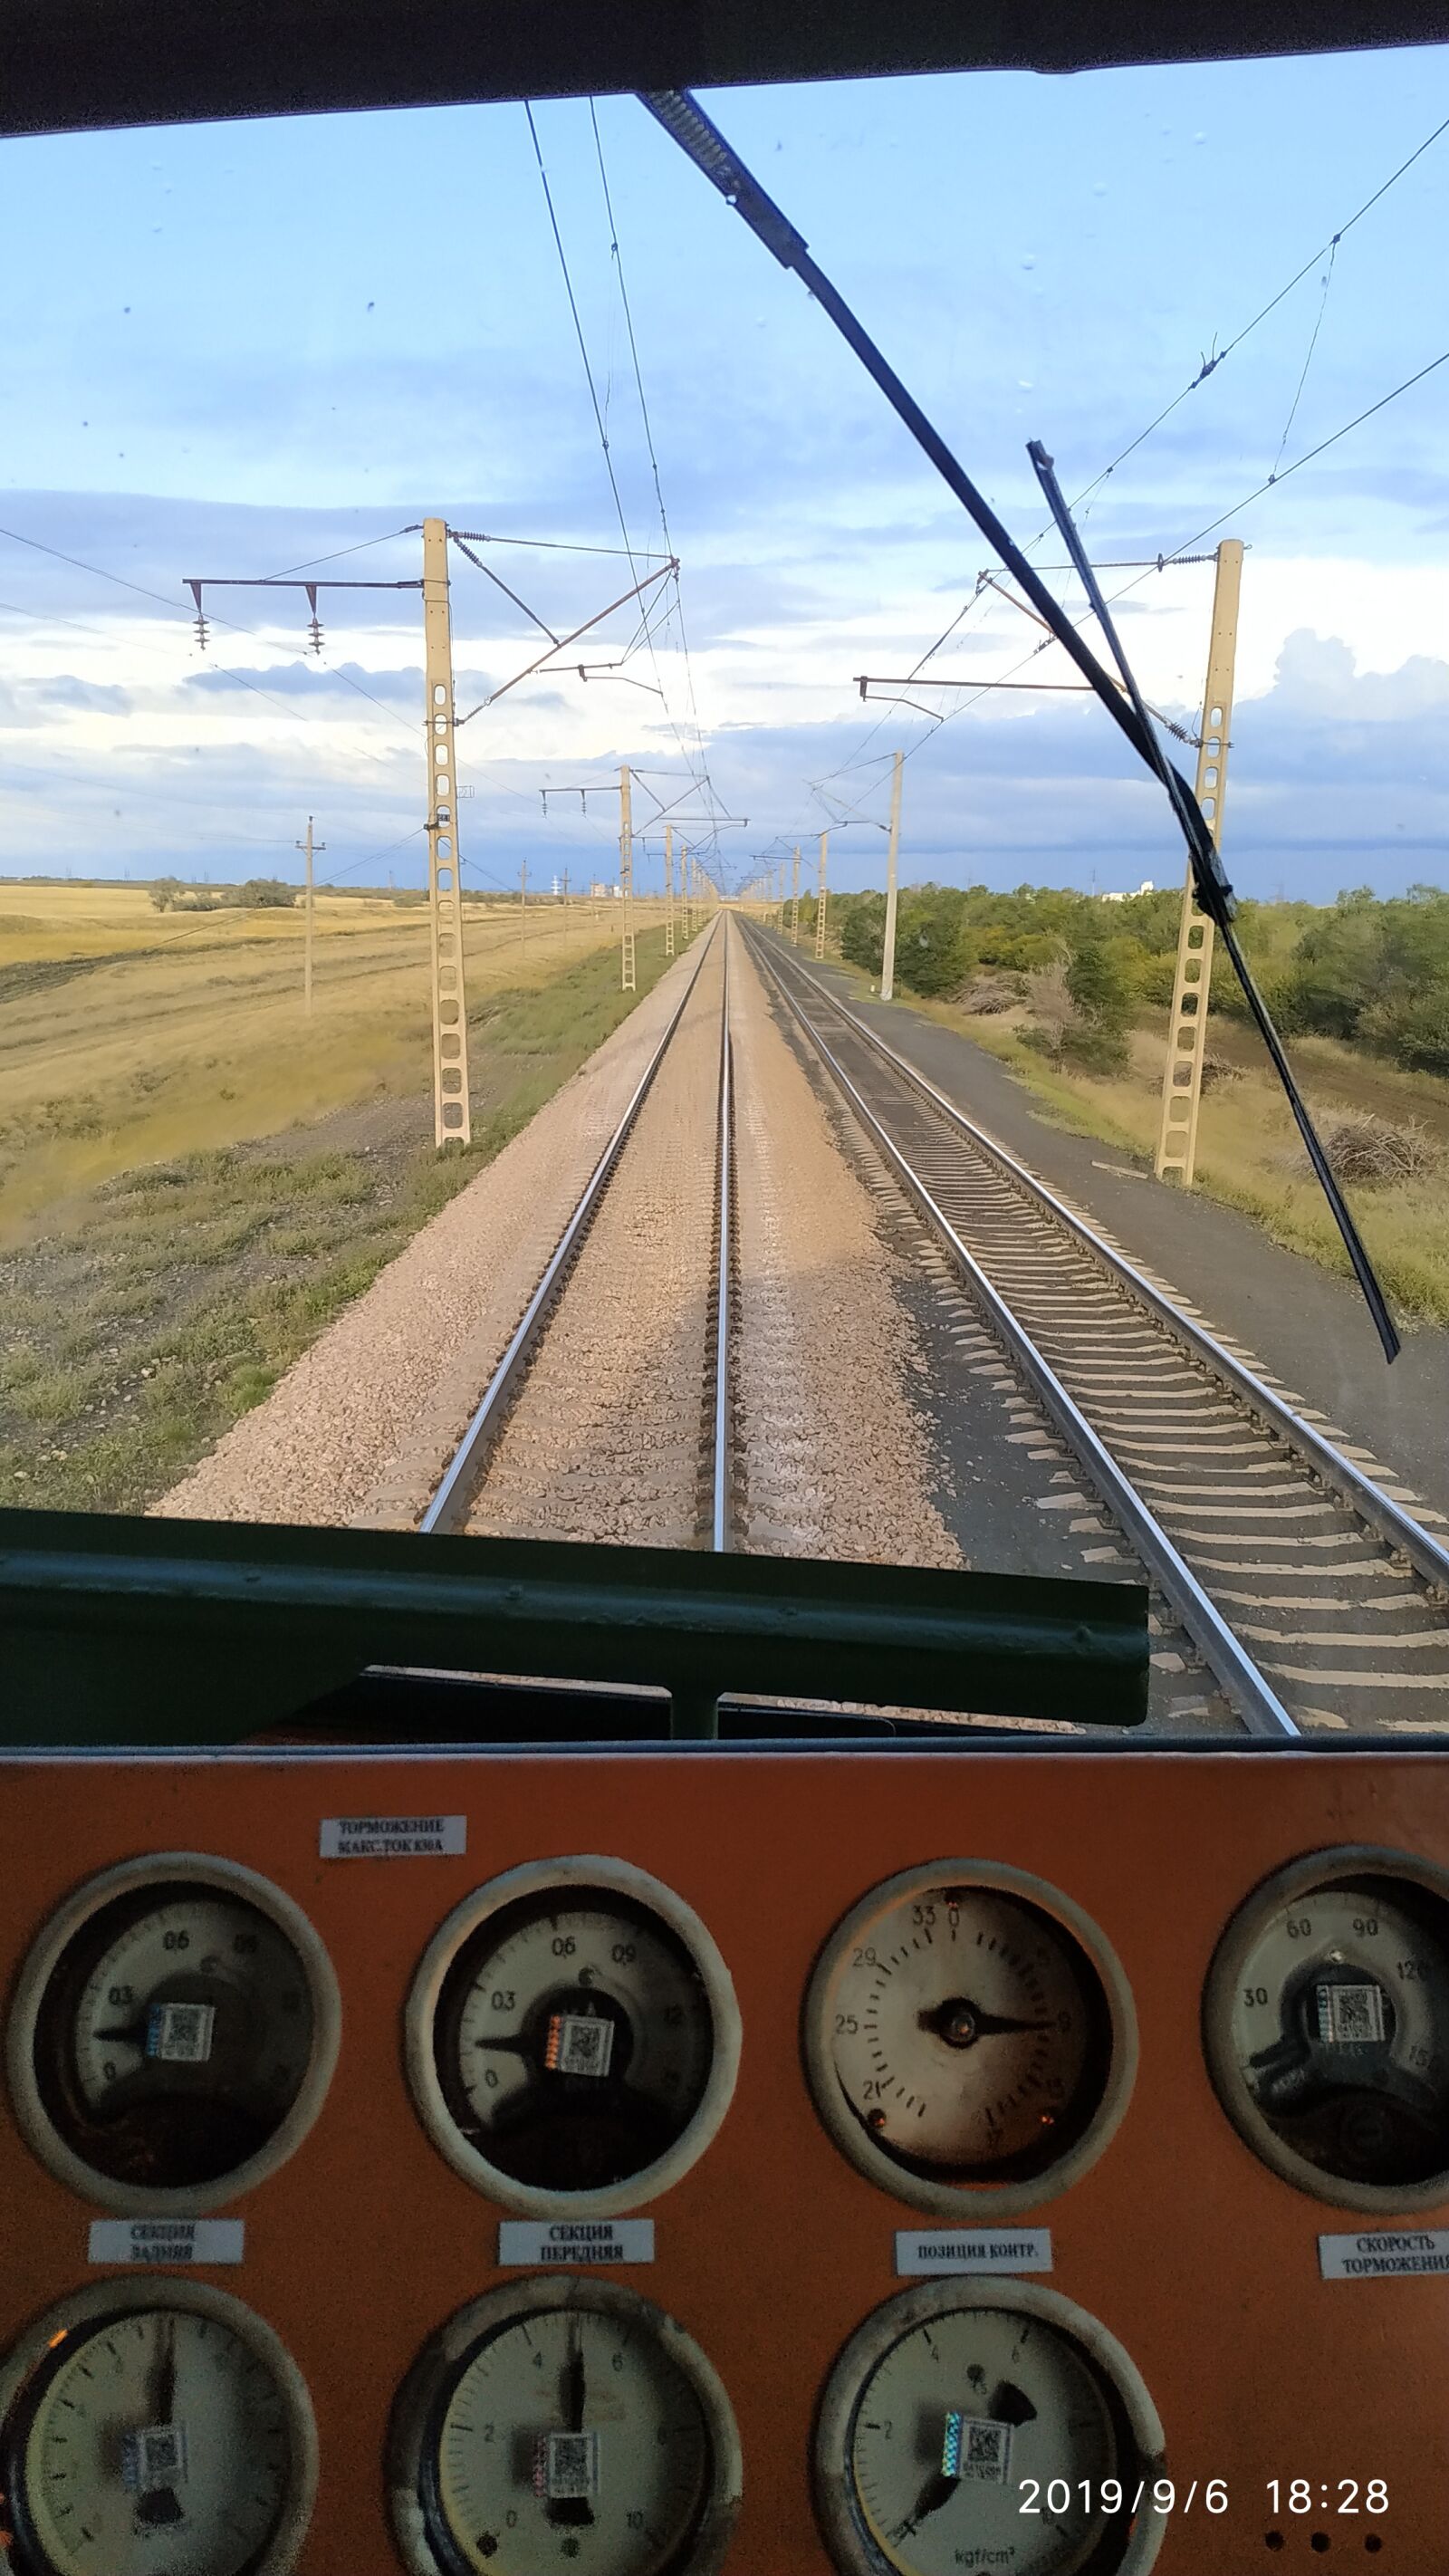 Xiaomi Redmi Note 6 Pro sample photo. Train, trip, adventure photography